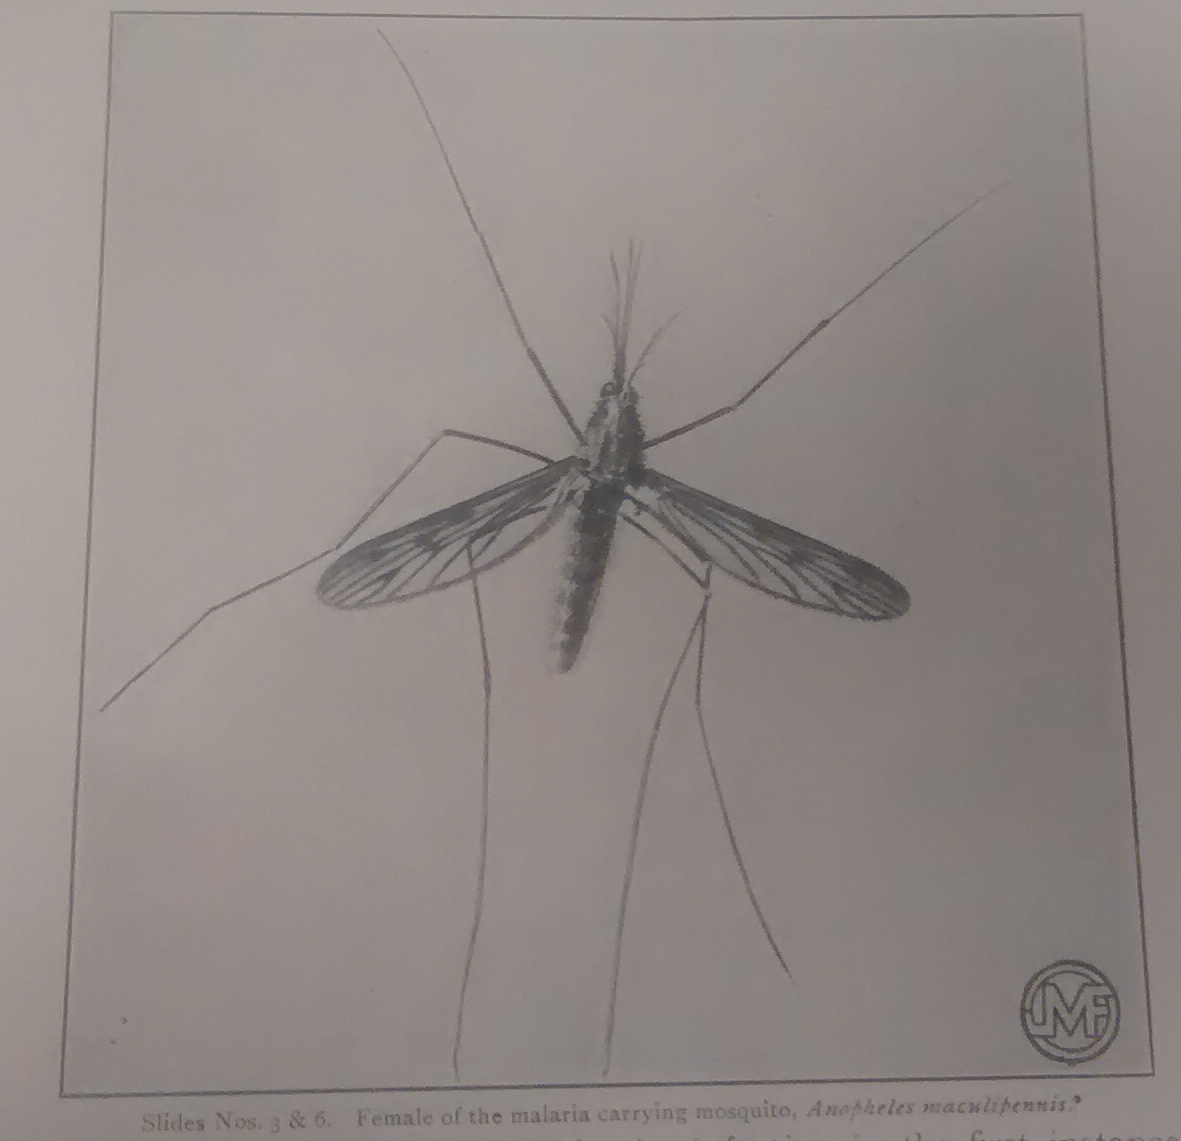 British female Anopheles mosquito